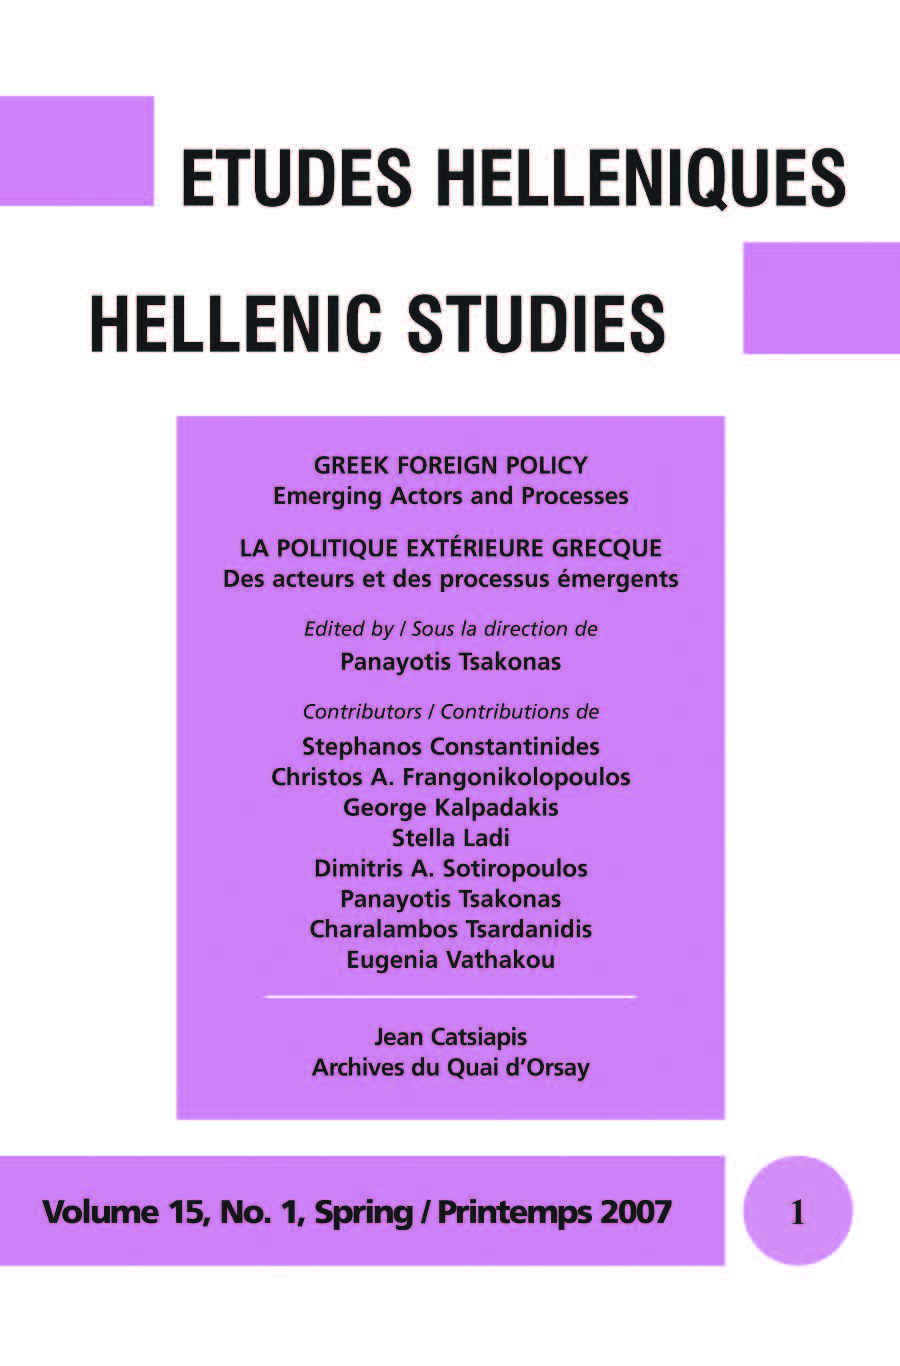 Études helléniques / Hellenic Studies, Volume 15, No 1, 2007, cover